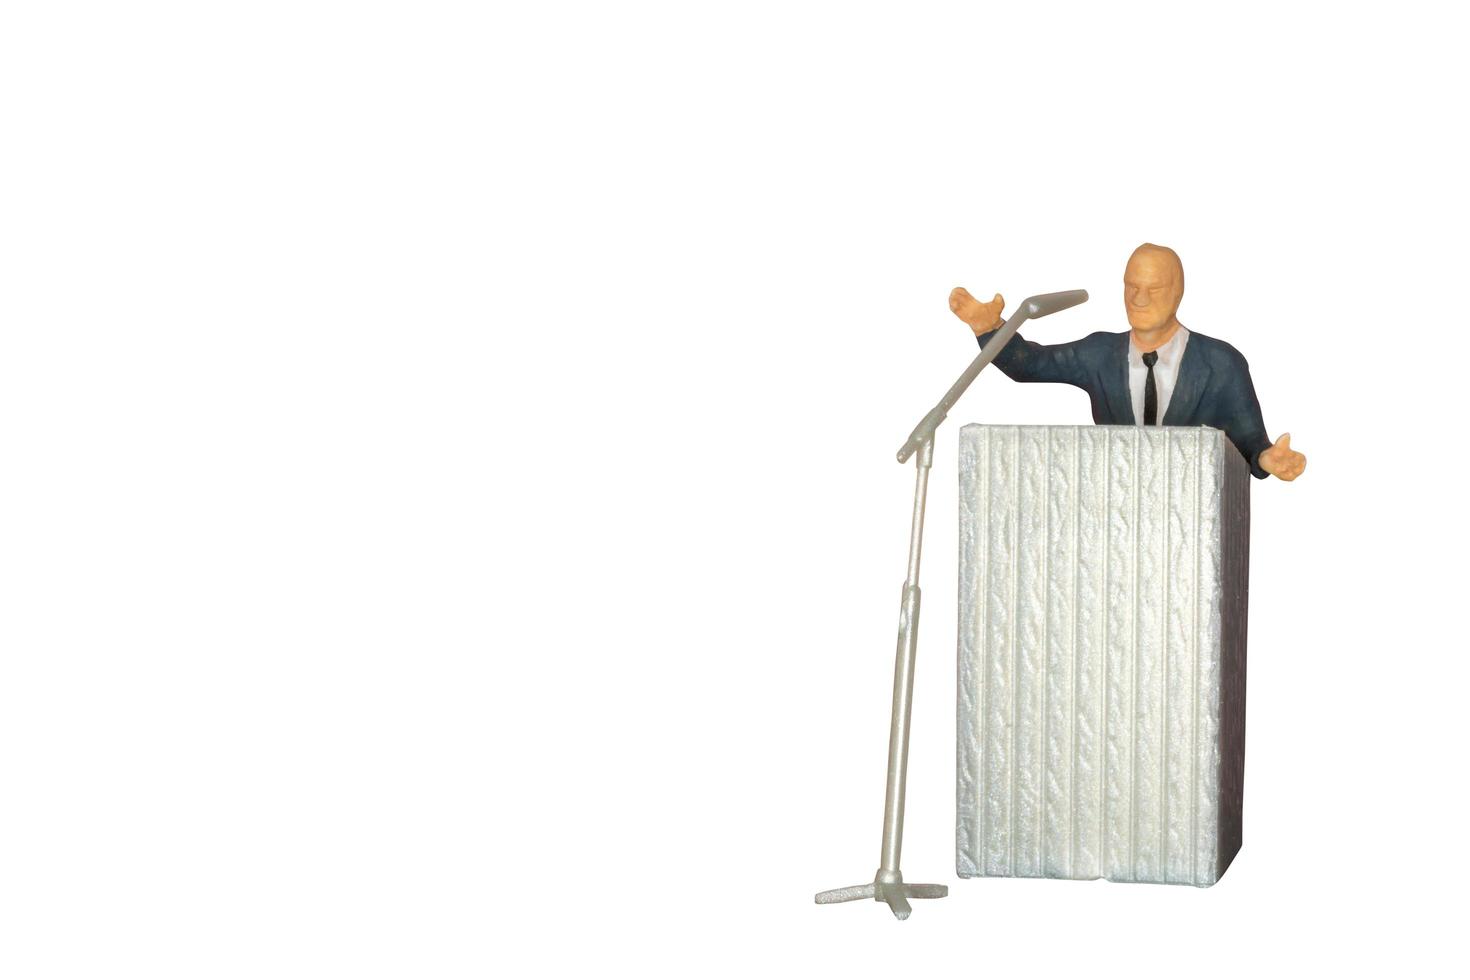 miniatyrpolitiker som talar med en mikrofon isolerad på en vit bakgrund foto